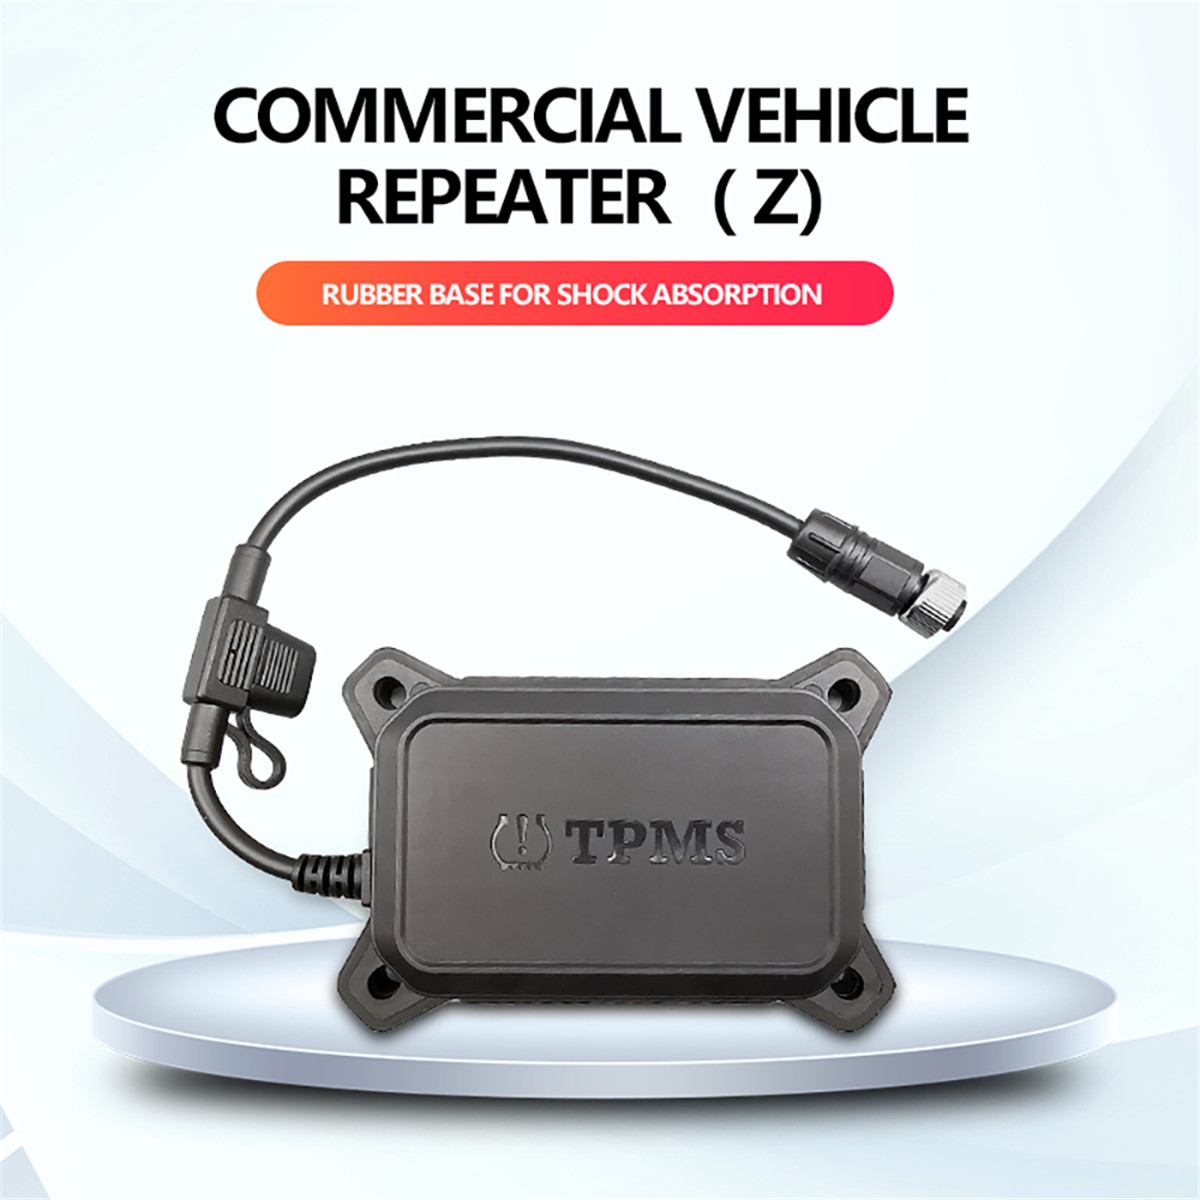 Repeater kendaraan komersial01 (11)